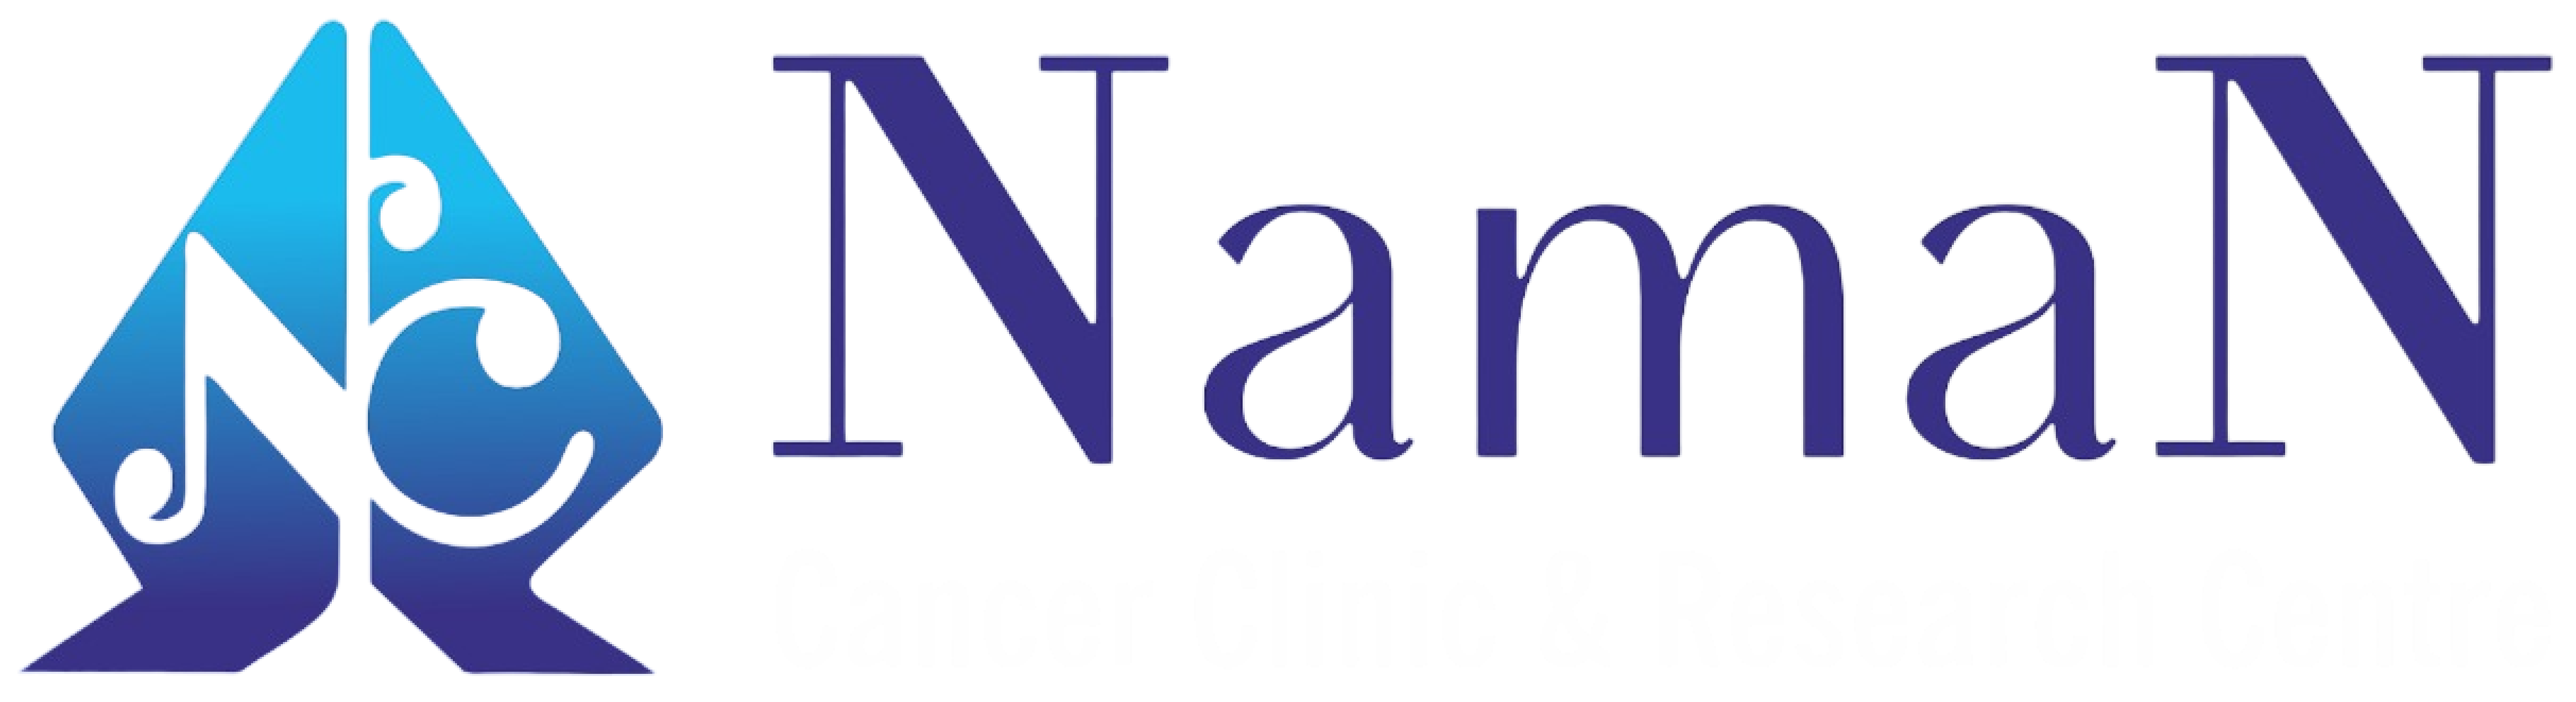 naman-logo-final.jpg